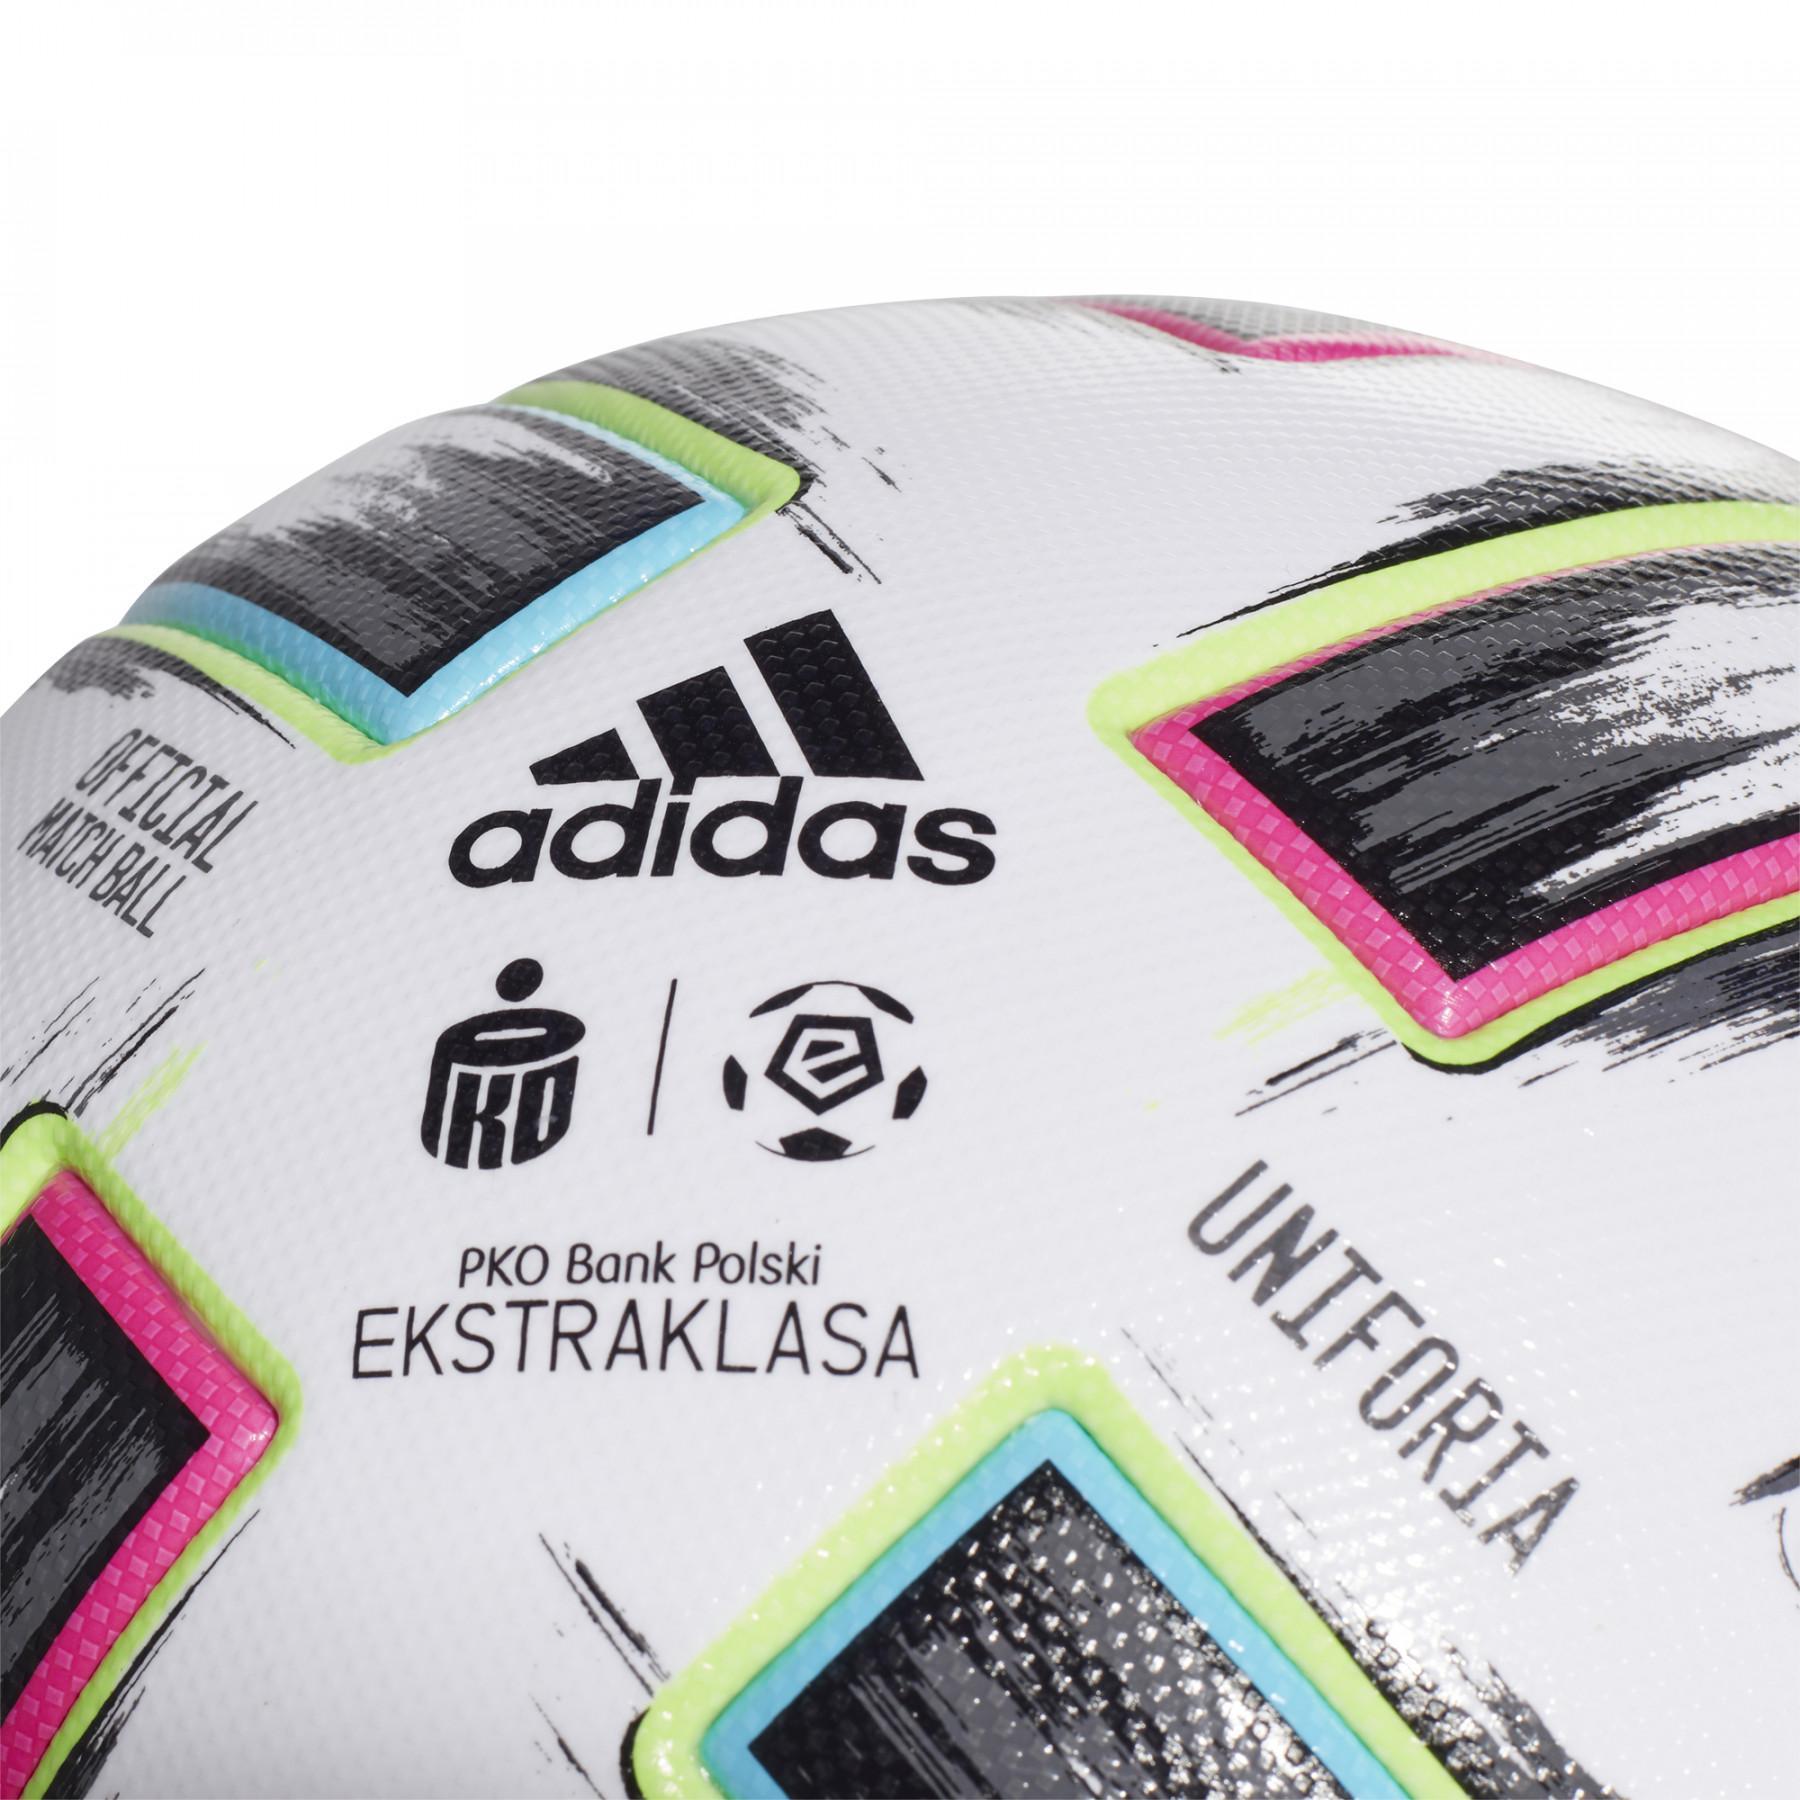 Balon adidas Ekstraklasa Pro 2020